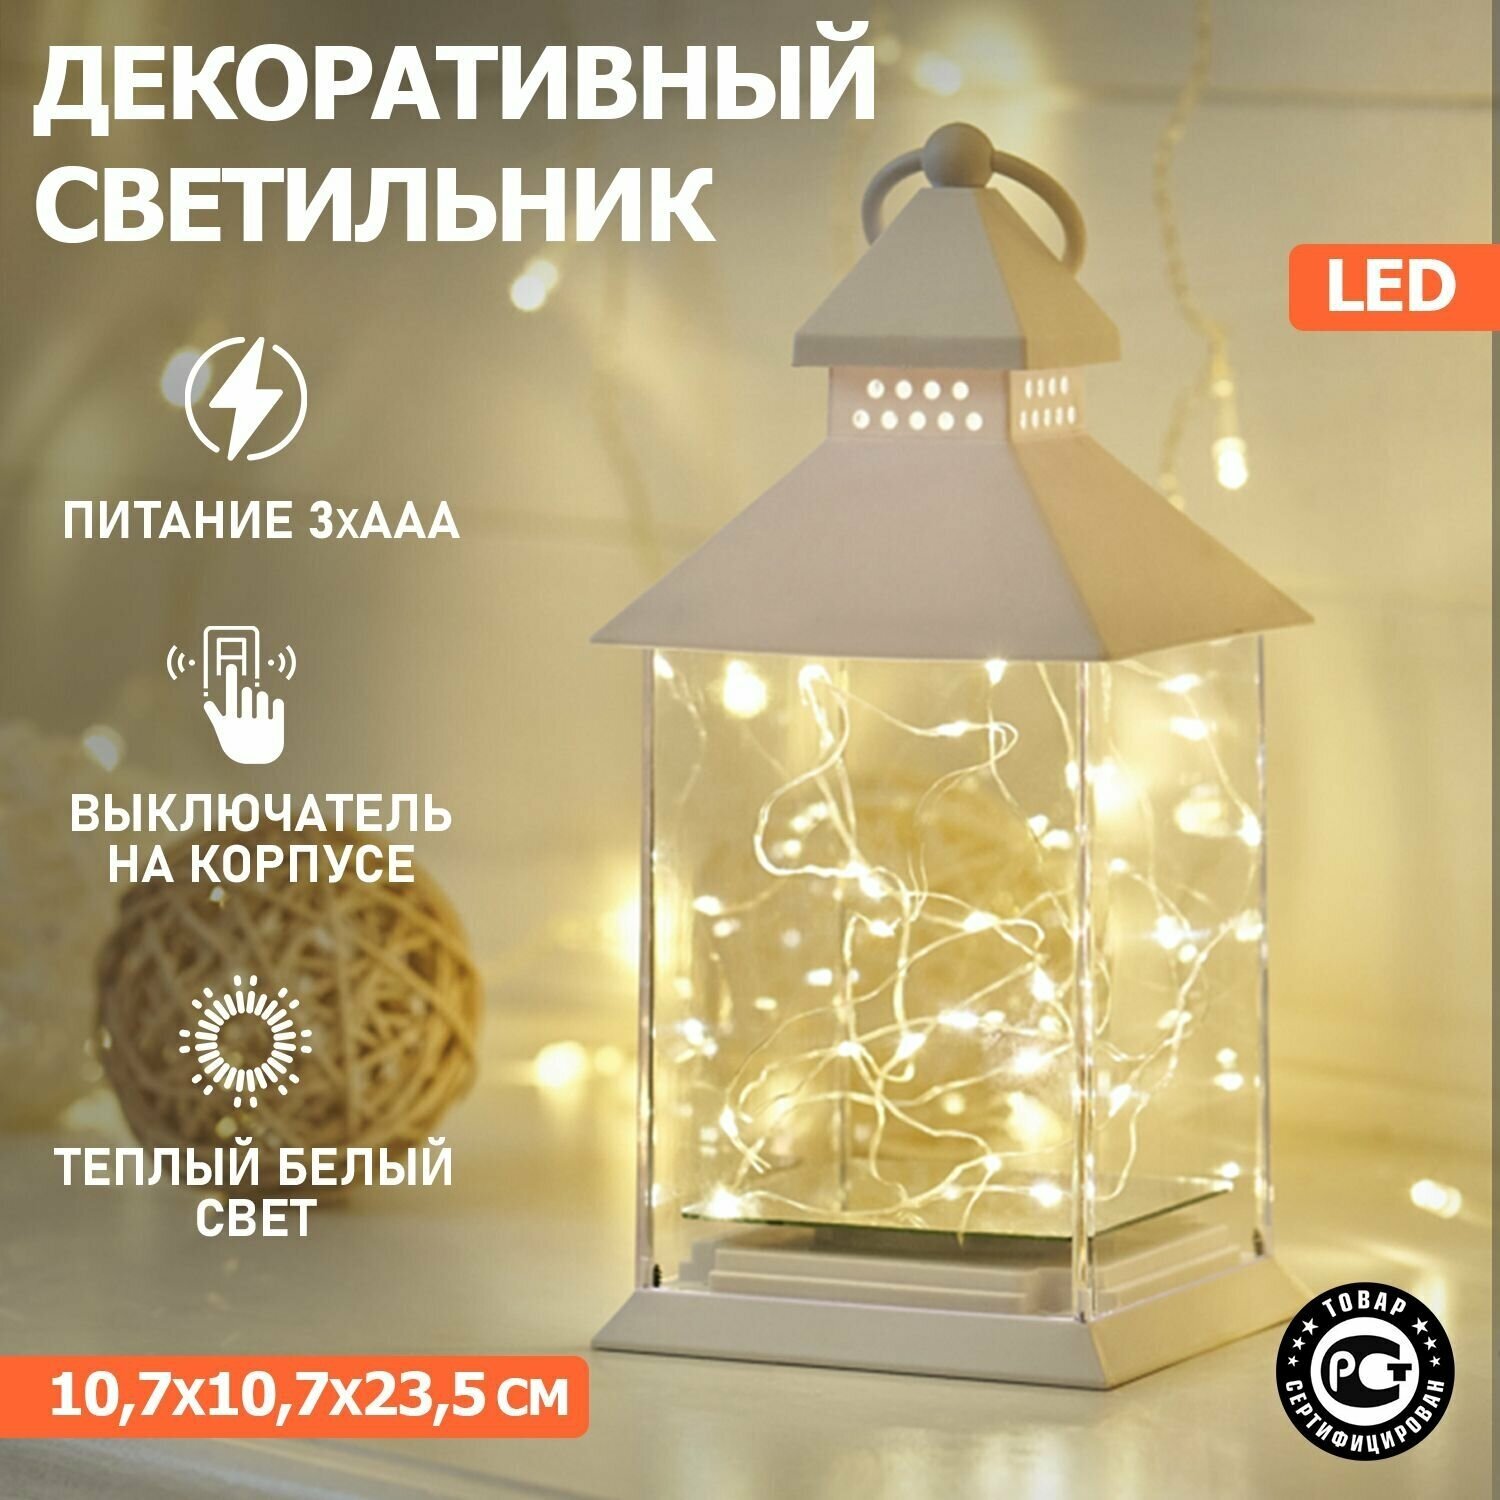 Светильник декоративный настольный фонарь новогодний ночник светодиодный Neon-Night 23.5 см LED подвесной декоративный с росой на батарейках